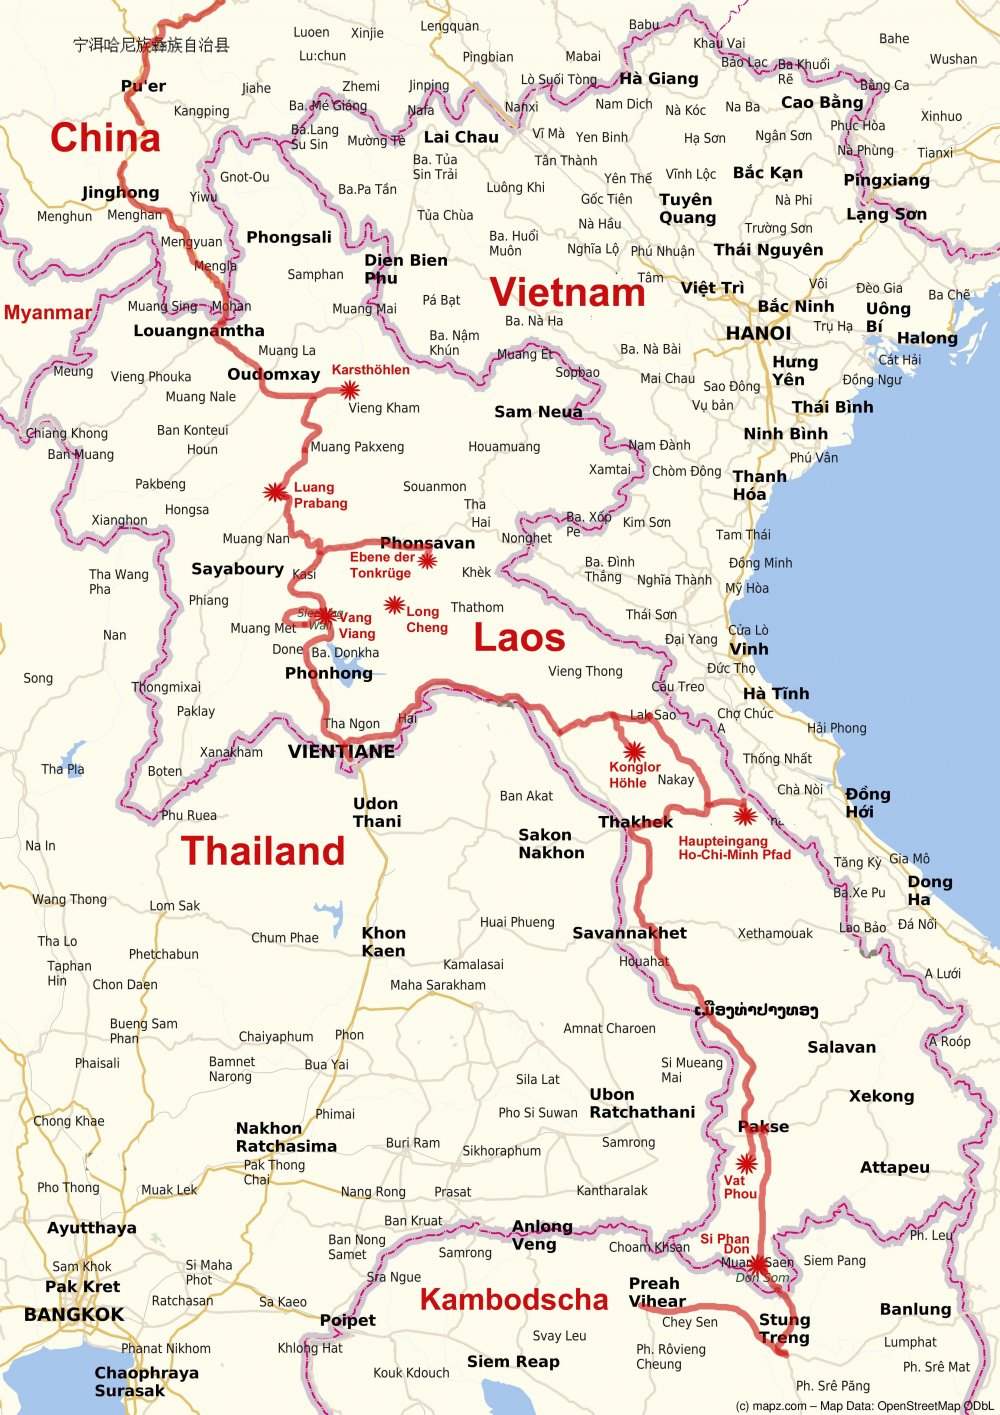 Route in Laos